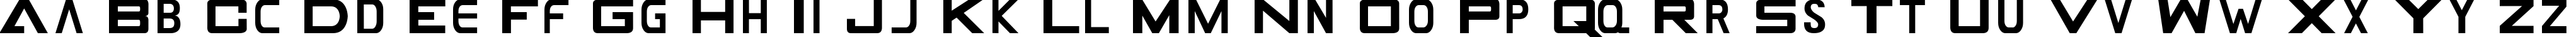 Пример написания английского алфавита шрифтом GAMECUBEN DualSet